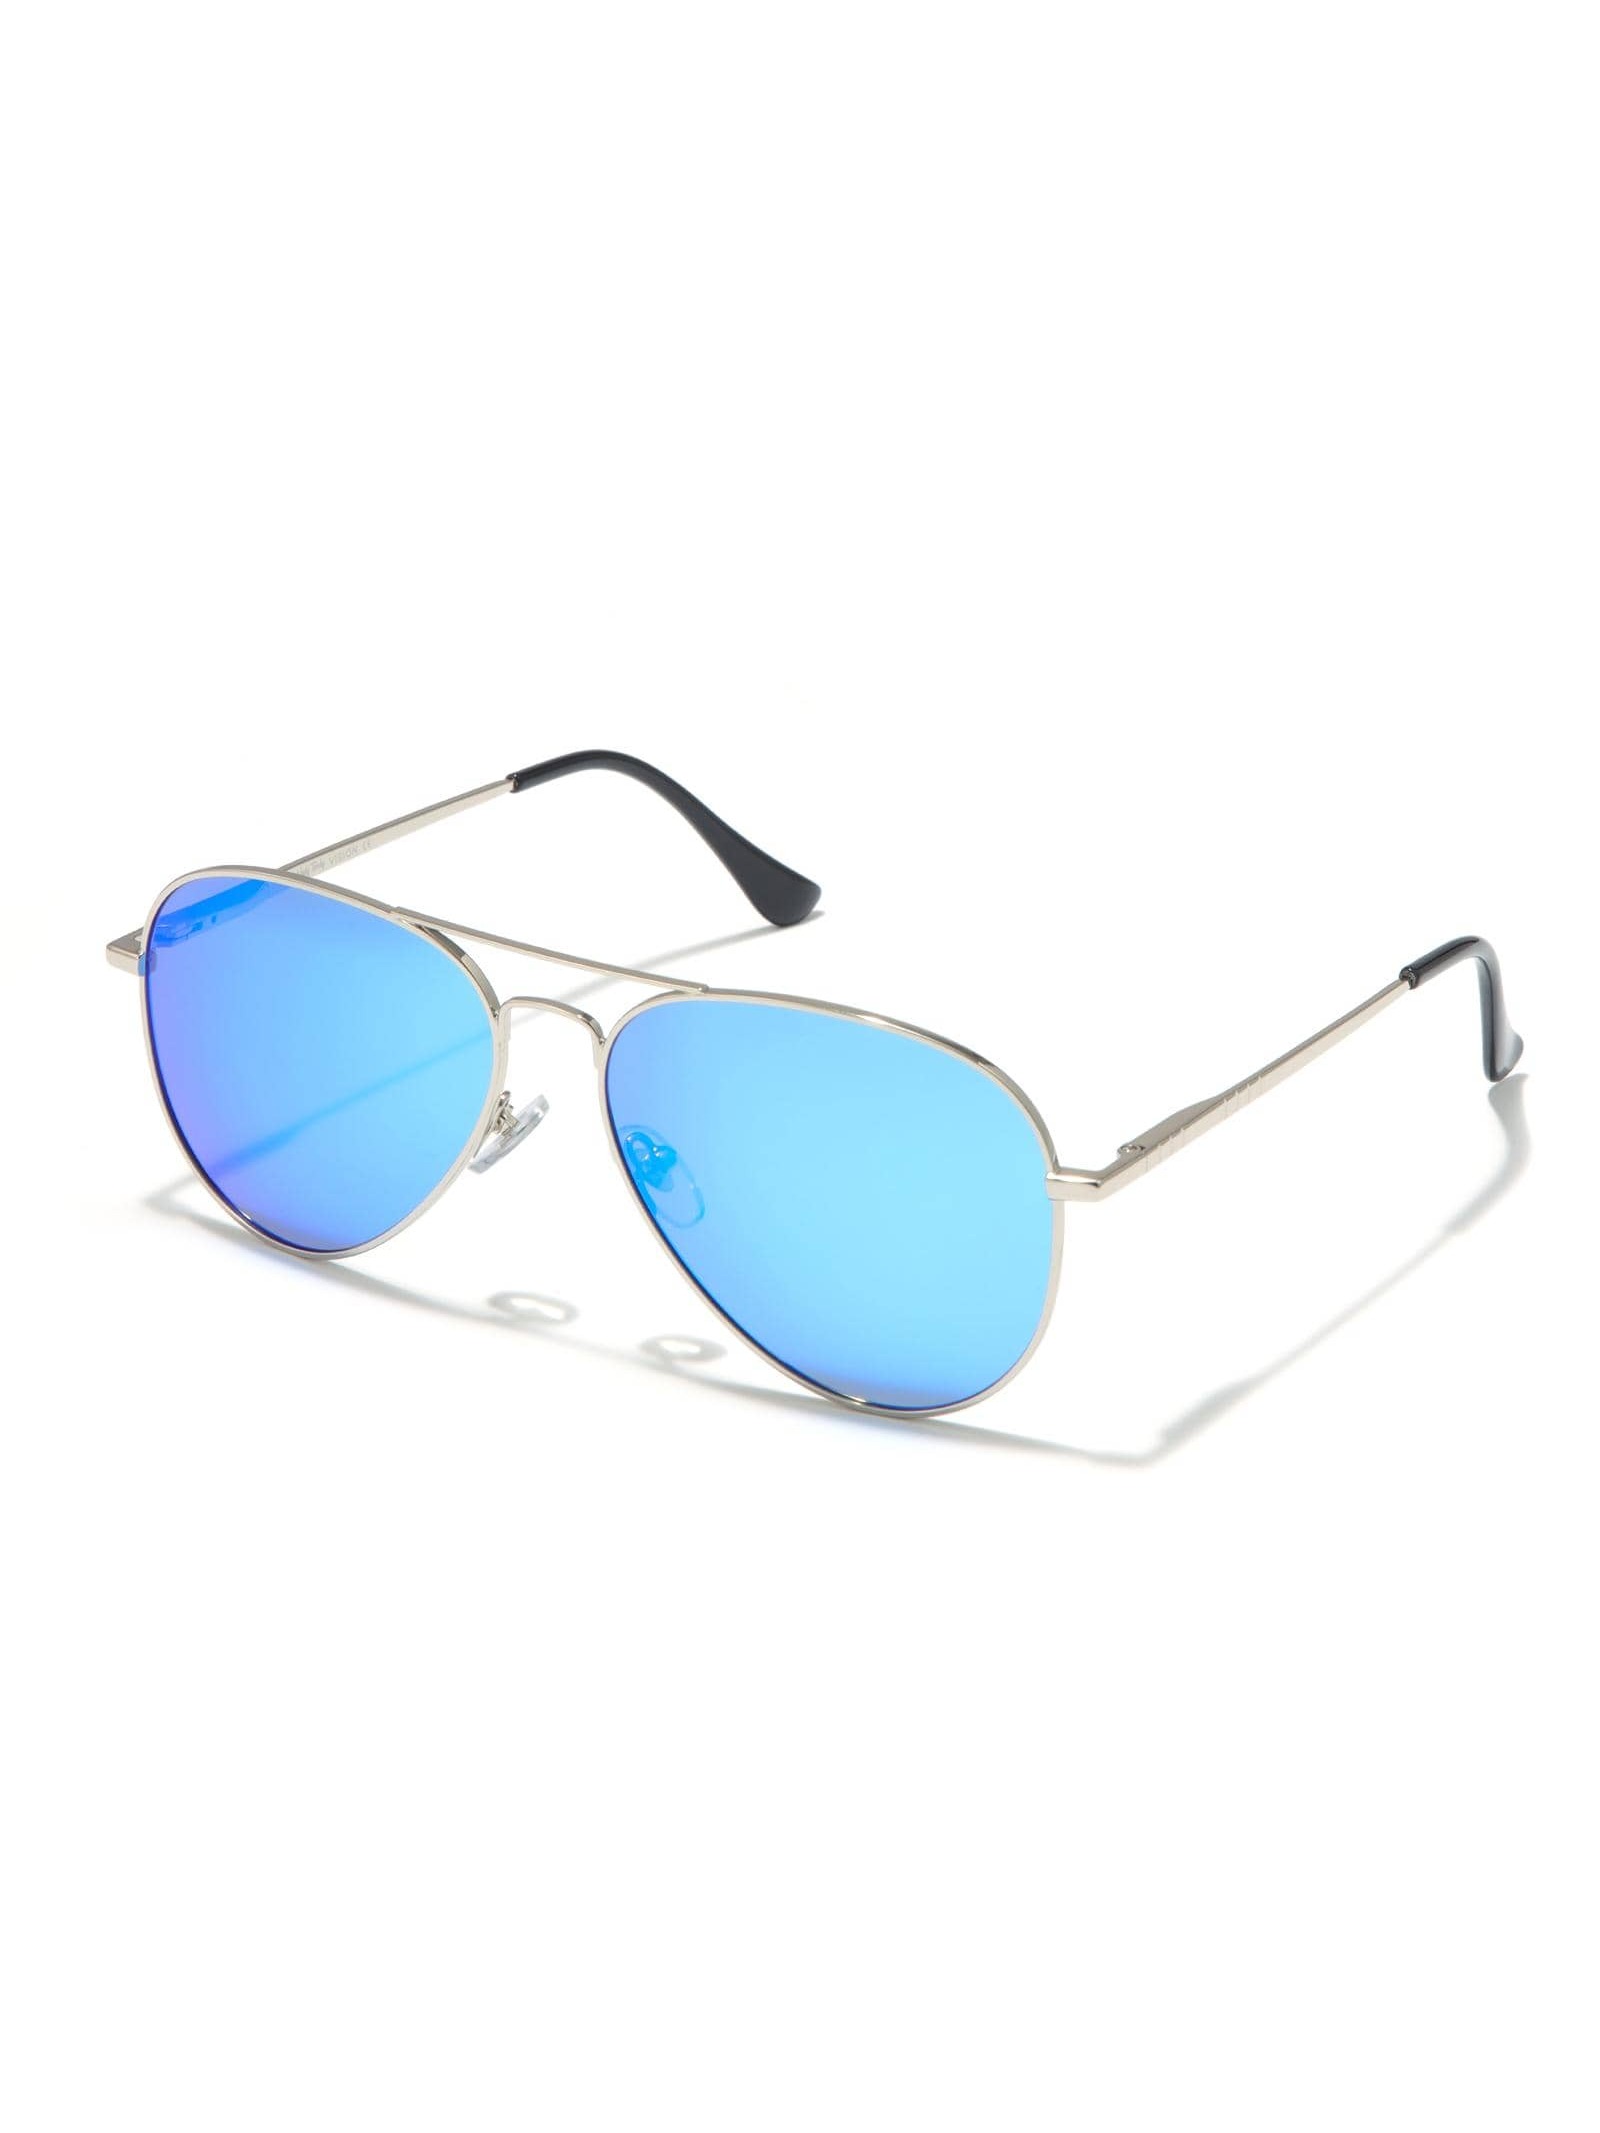 Солнцезащитные очки-авиаторы Veda Tinda для женщин и мужчин солнцезащитные очки emporio armani овальные оправа пластик зеркальные для мужчин серый